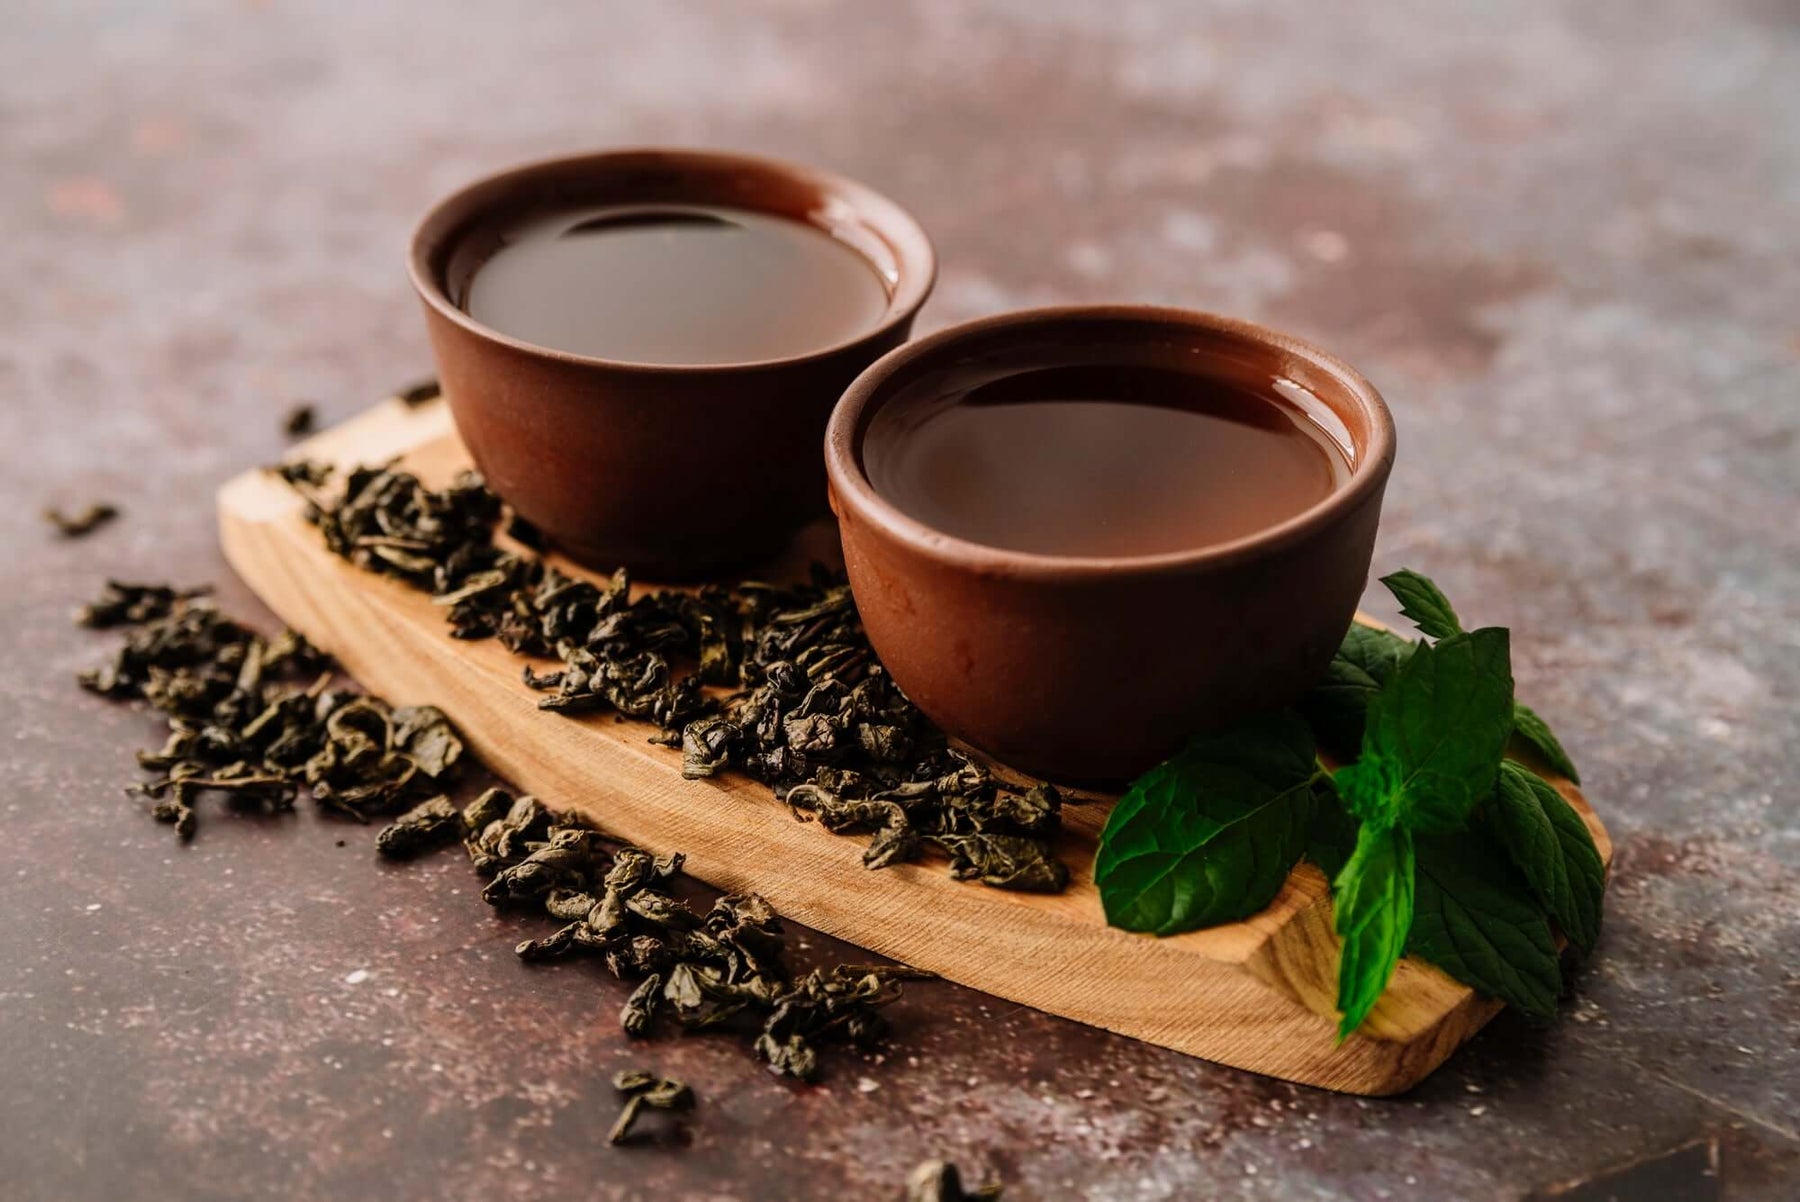 การลดน้ำหนักด้วยชาอู่หลง Oolong Tea for burn fat and weight loss: กลยุทธ์อันหอมอร่อย ได้ผลลัพท์และสุขภาพที่ดี